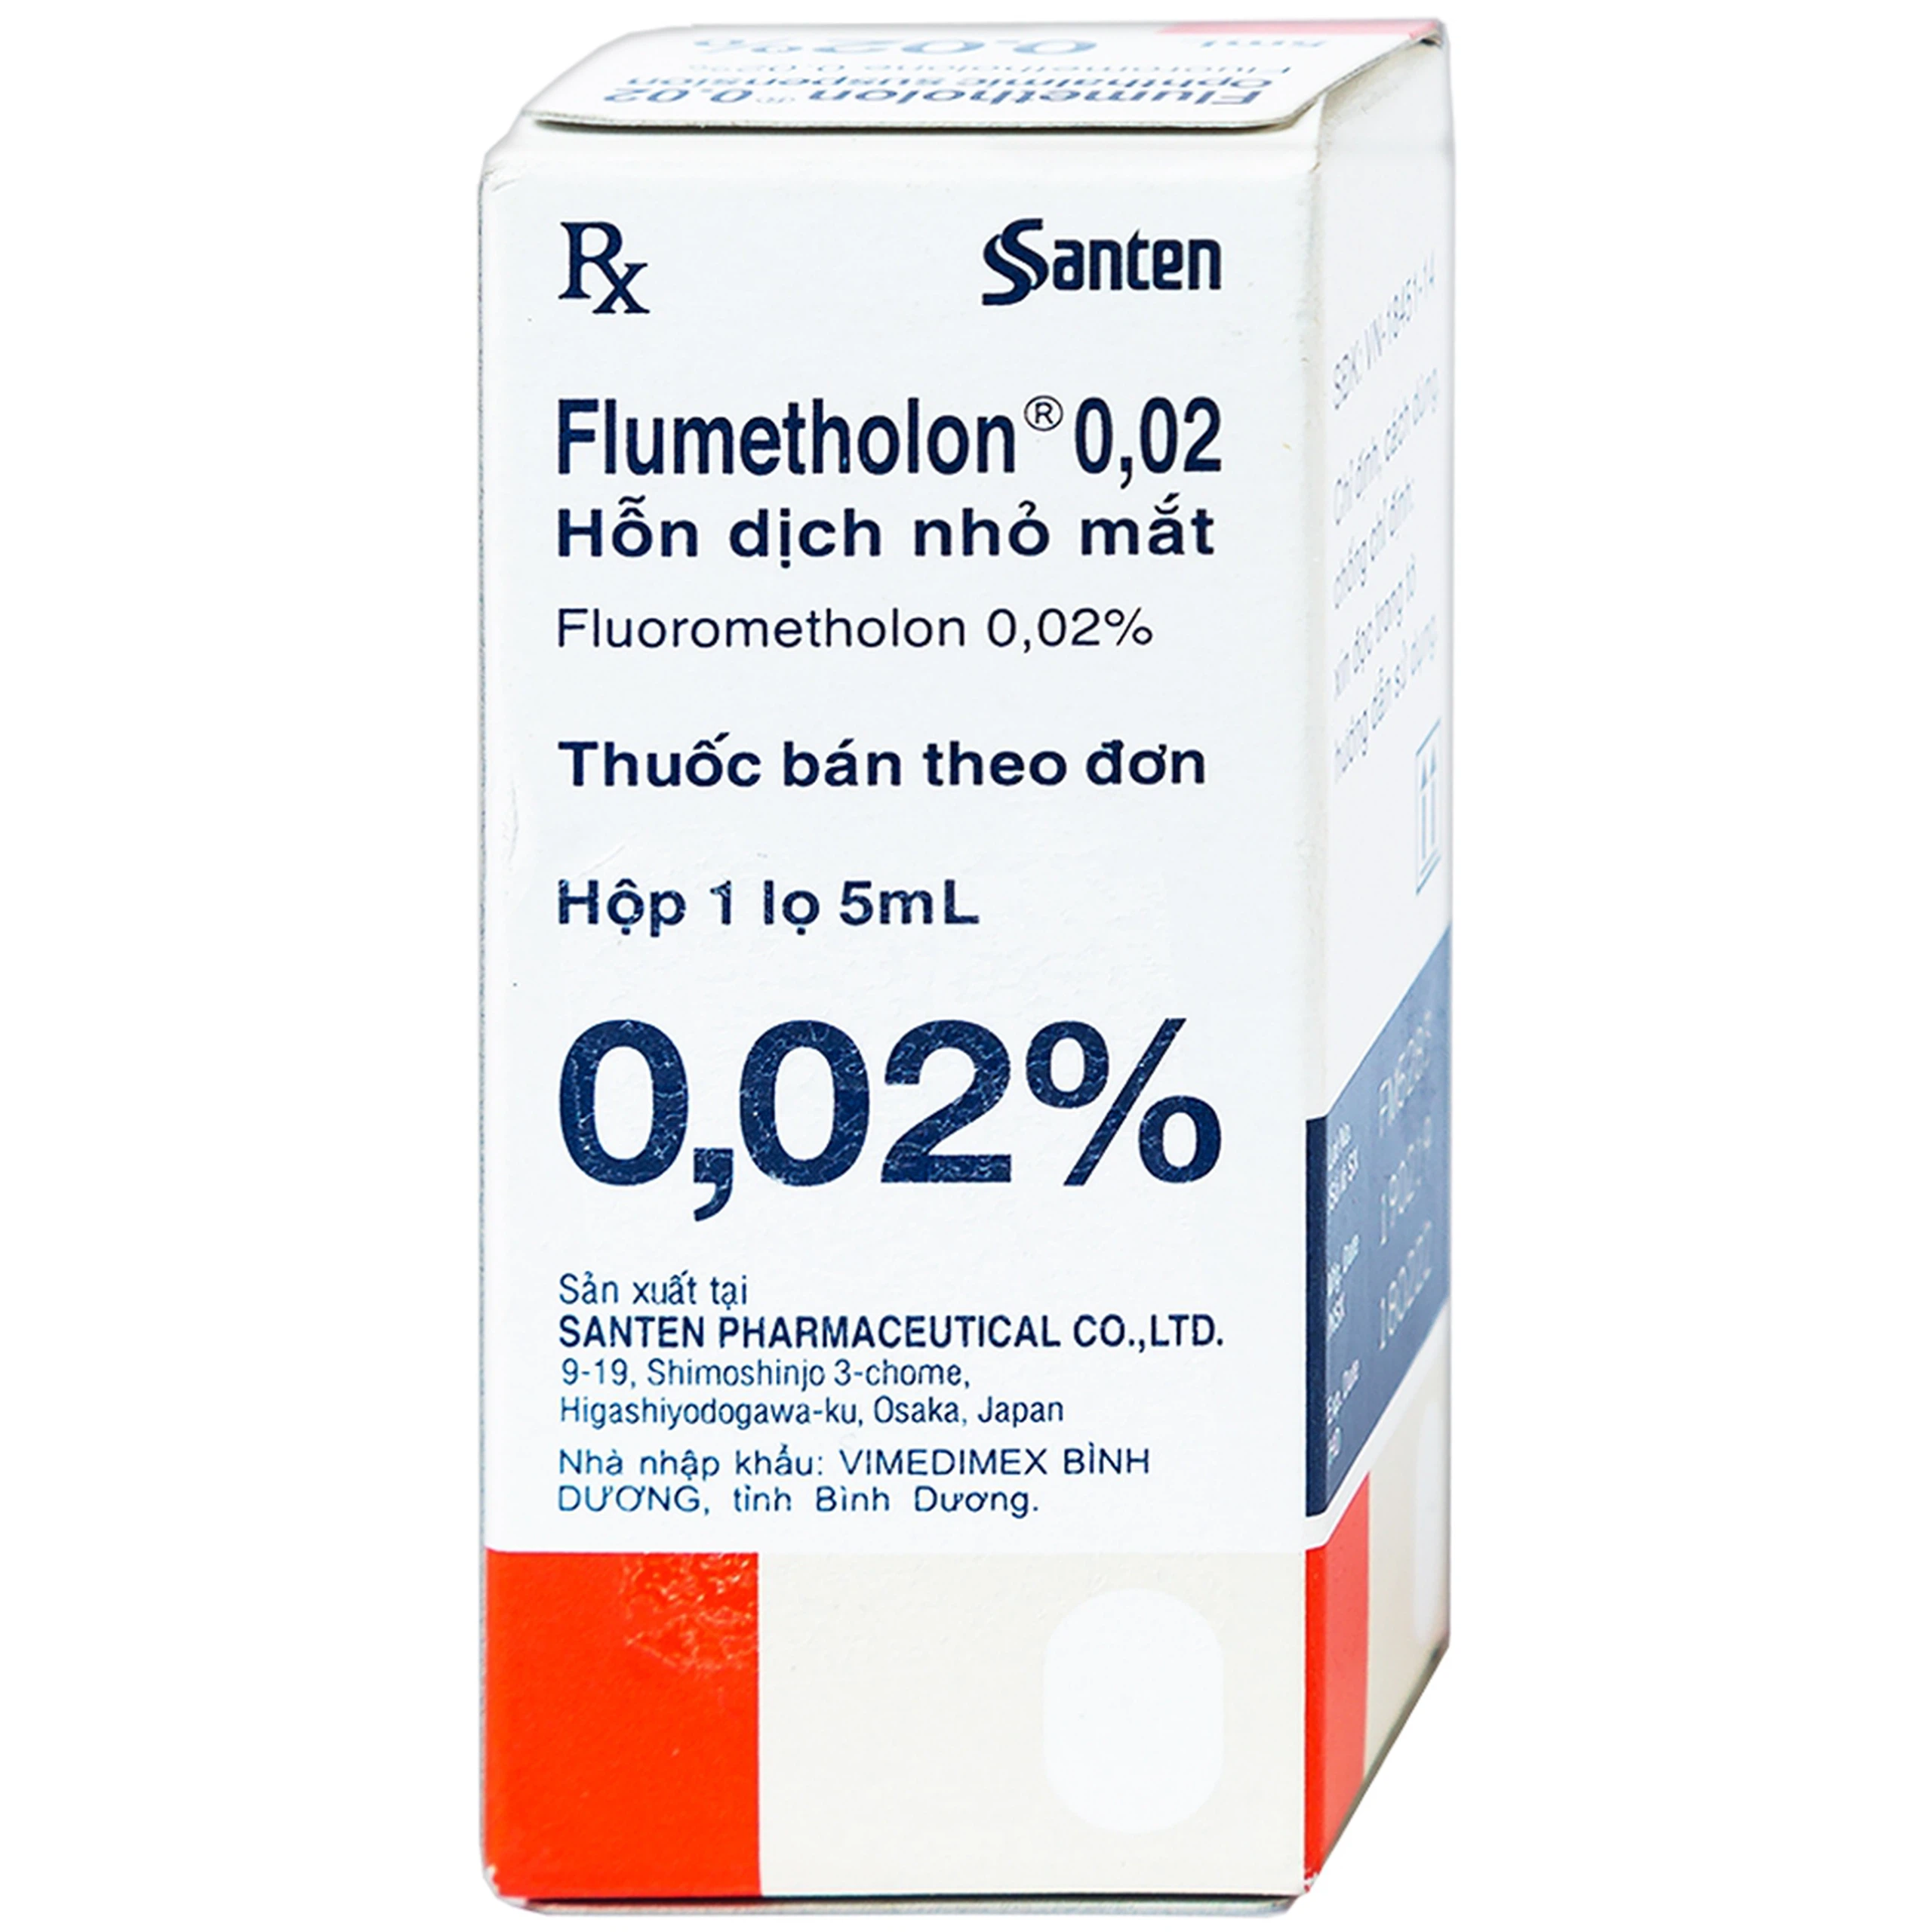 Hỗn dịch nhỏ mắt Flumetholon 0.02% Santen điều trị các bệnh viêm phía ngoài mắt (5ml)